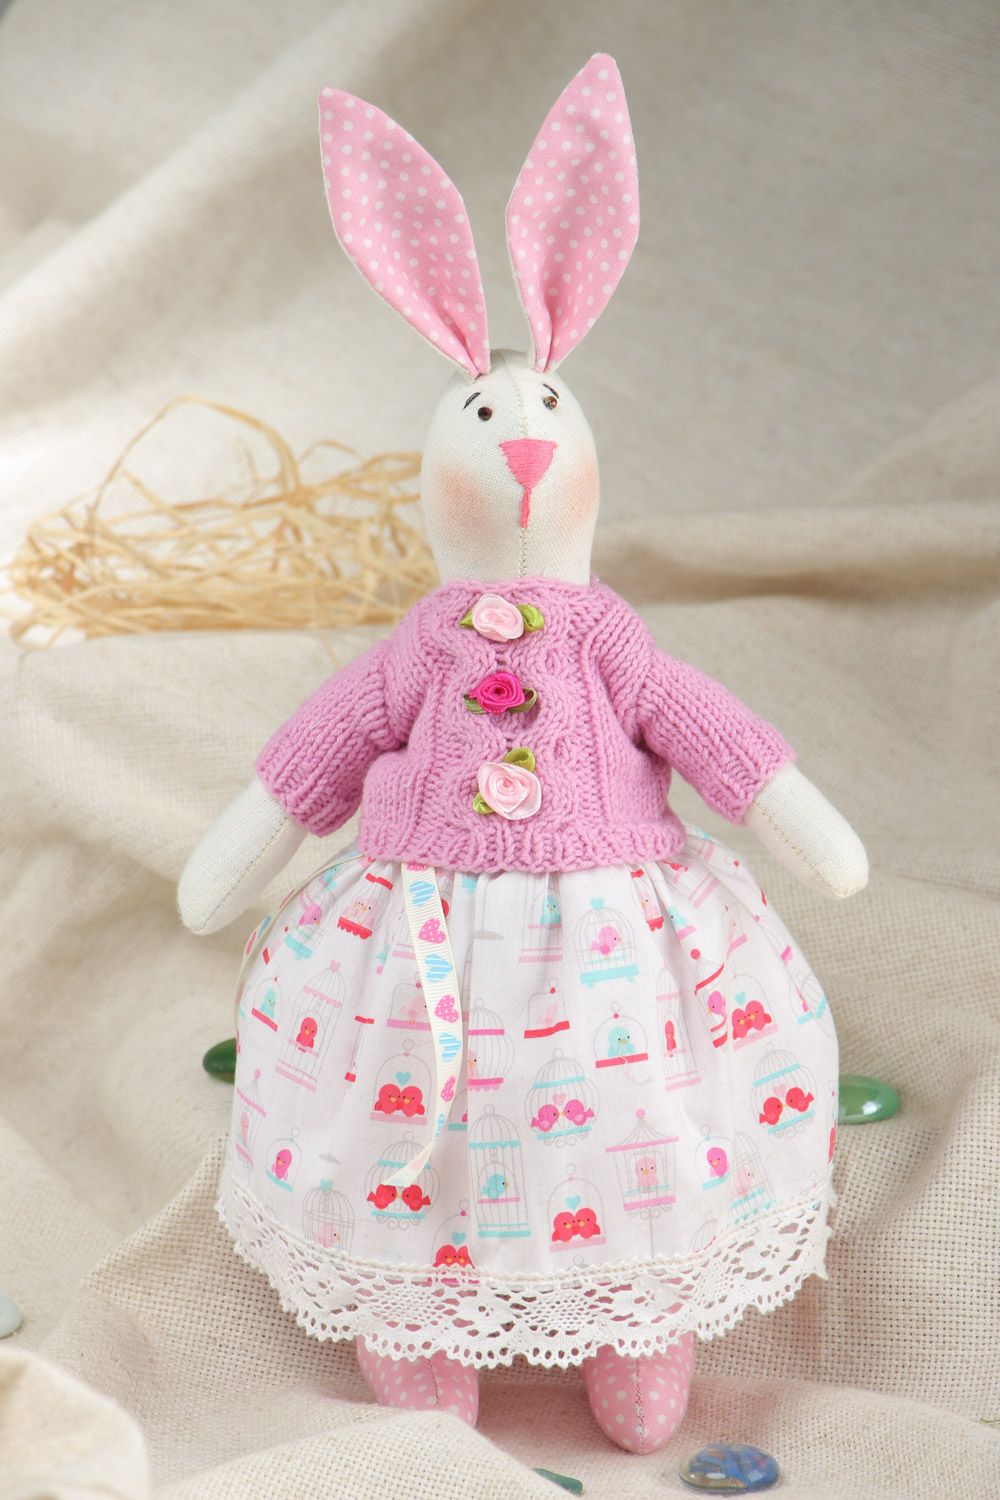 Textil Kuscheltier Hase im rosa Trägerkleid handmade für Kinder schön foto 1